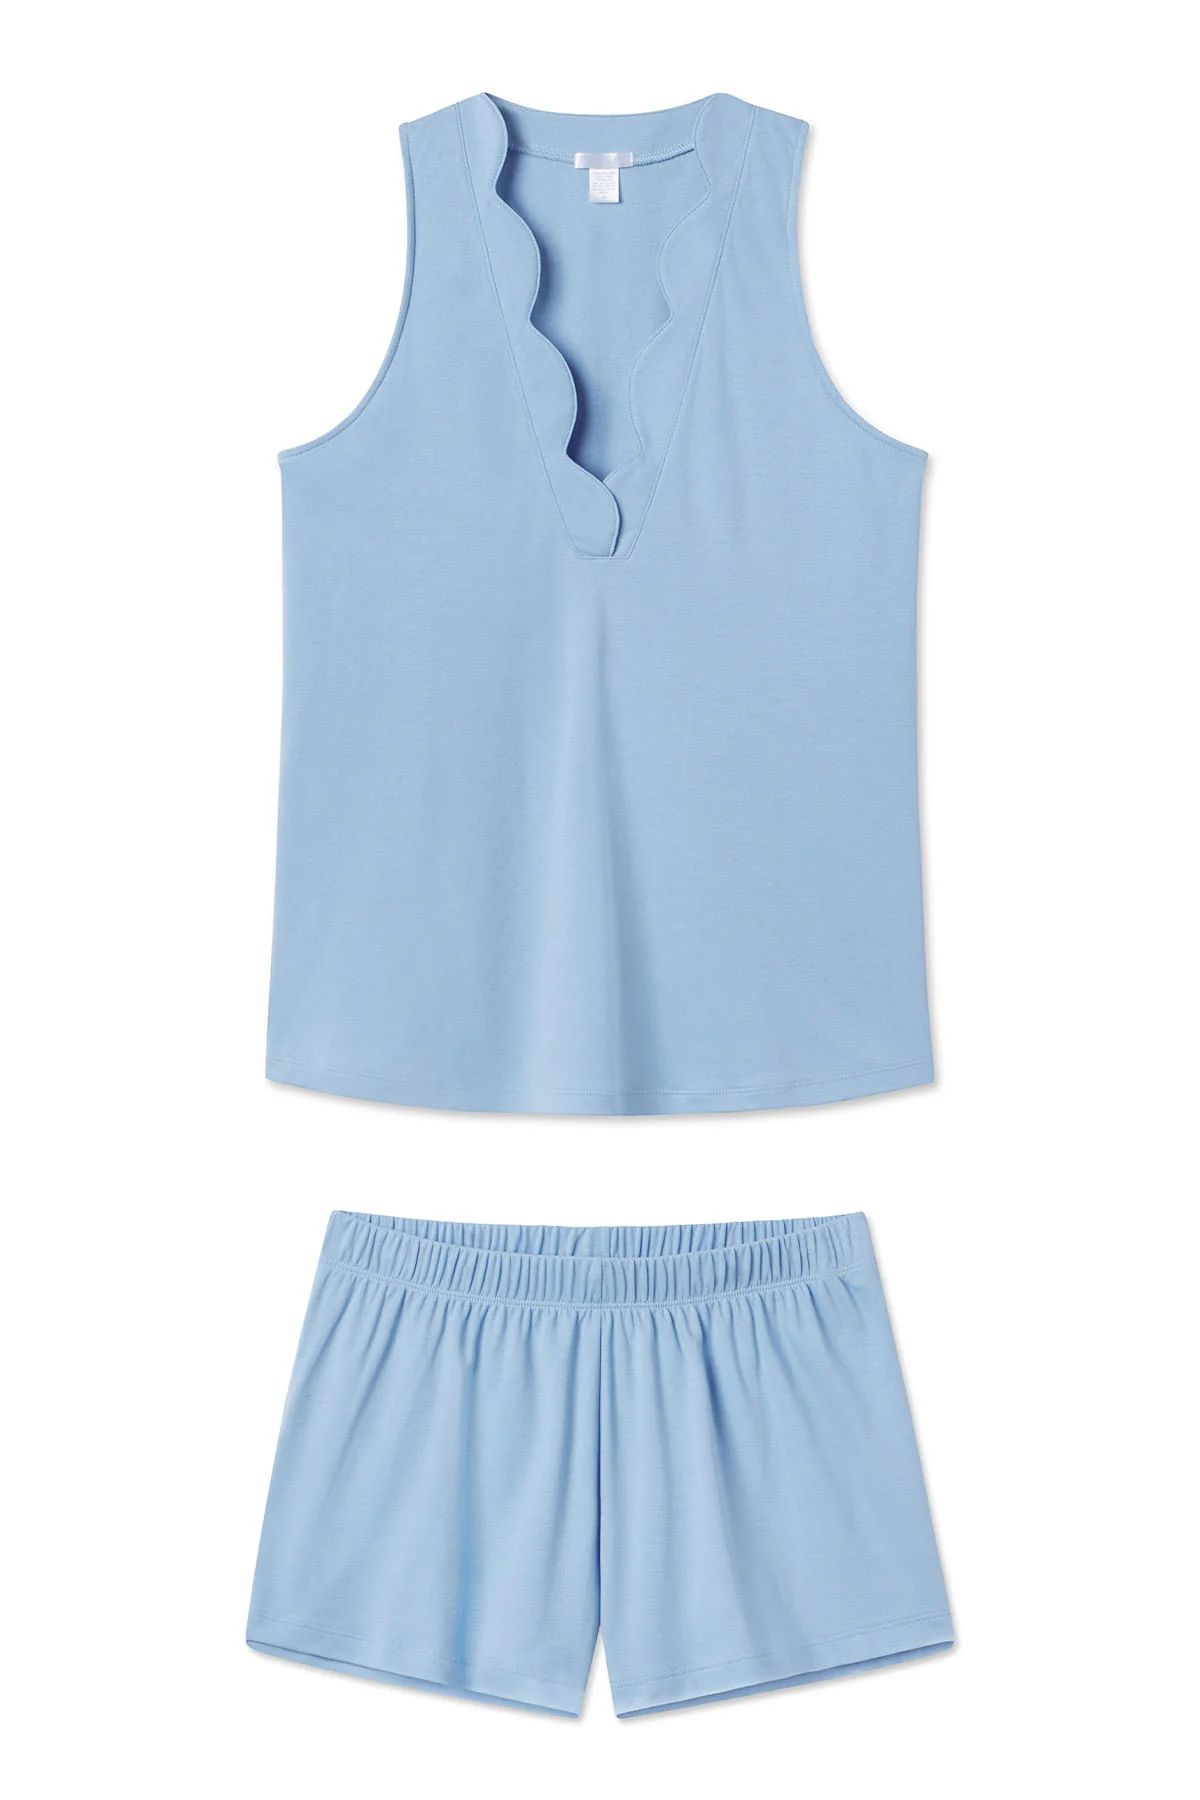 Pima Scallop Shorts Set in Chambray Blue | Lake Pajamas